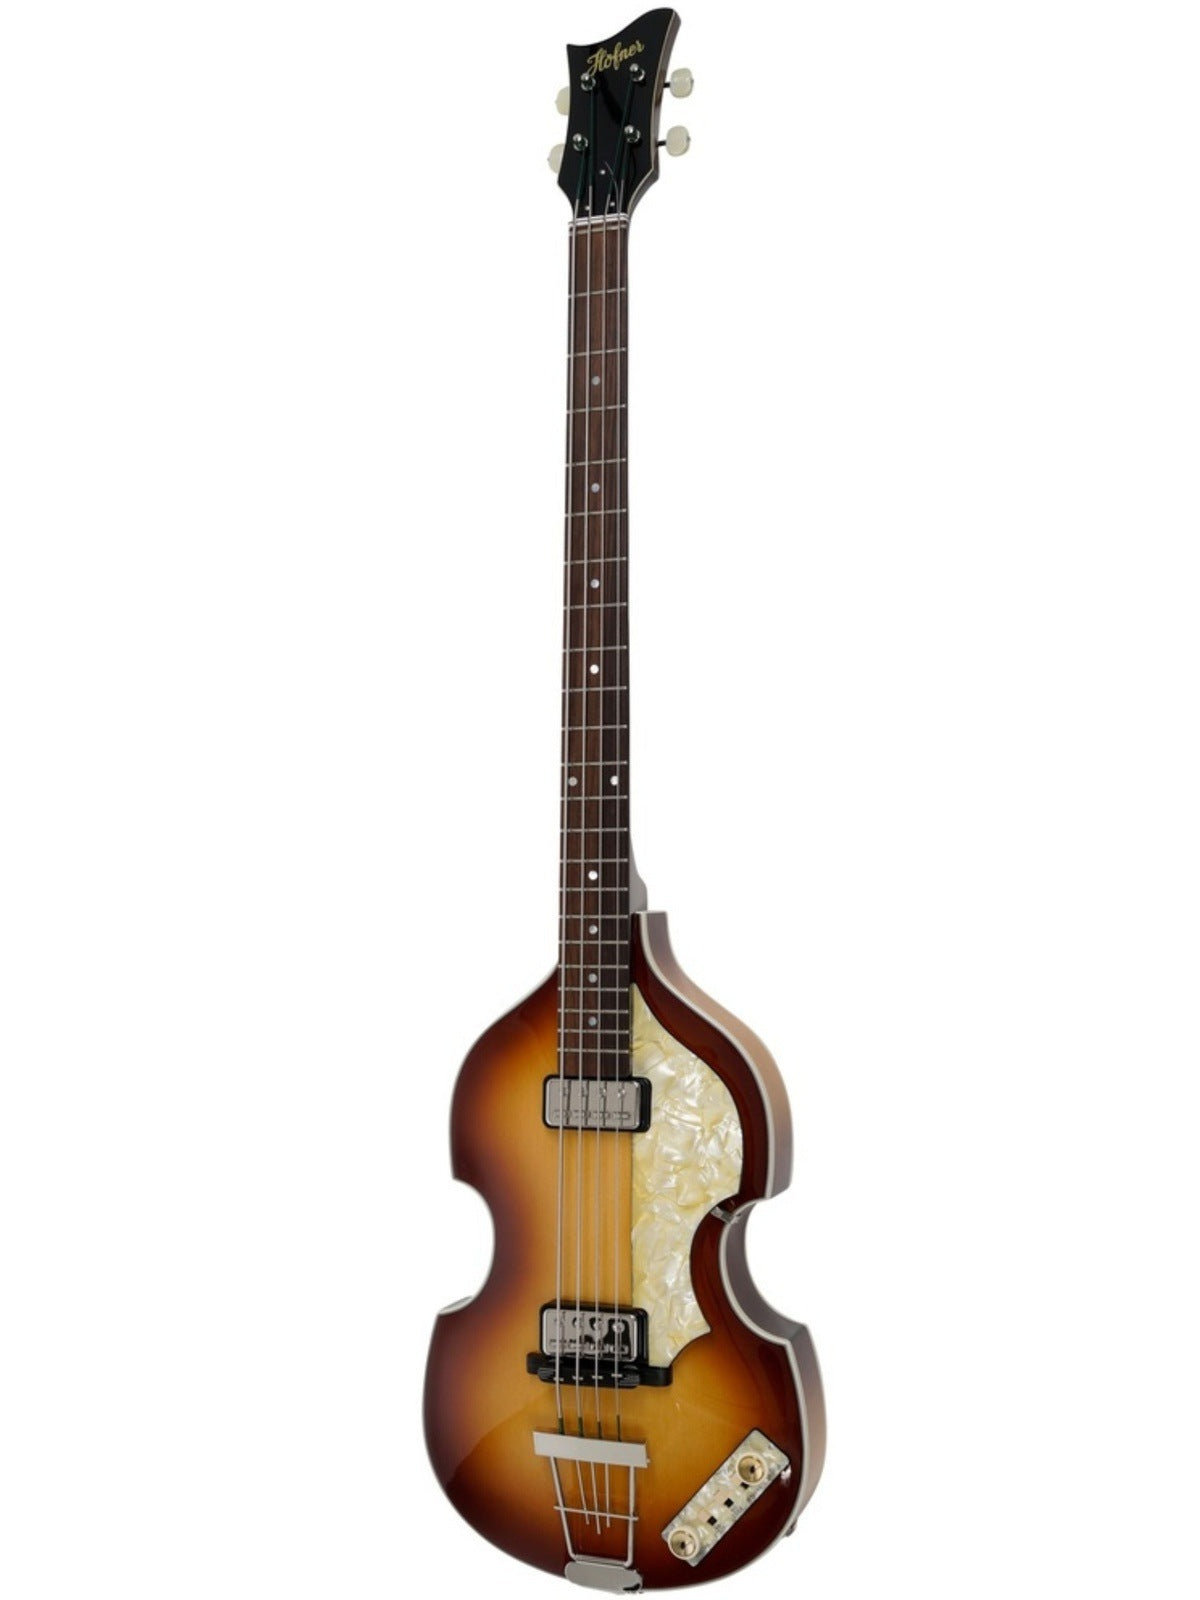 Höfner 500/I '63 Re-Issue Artist Violin Bass